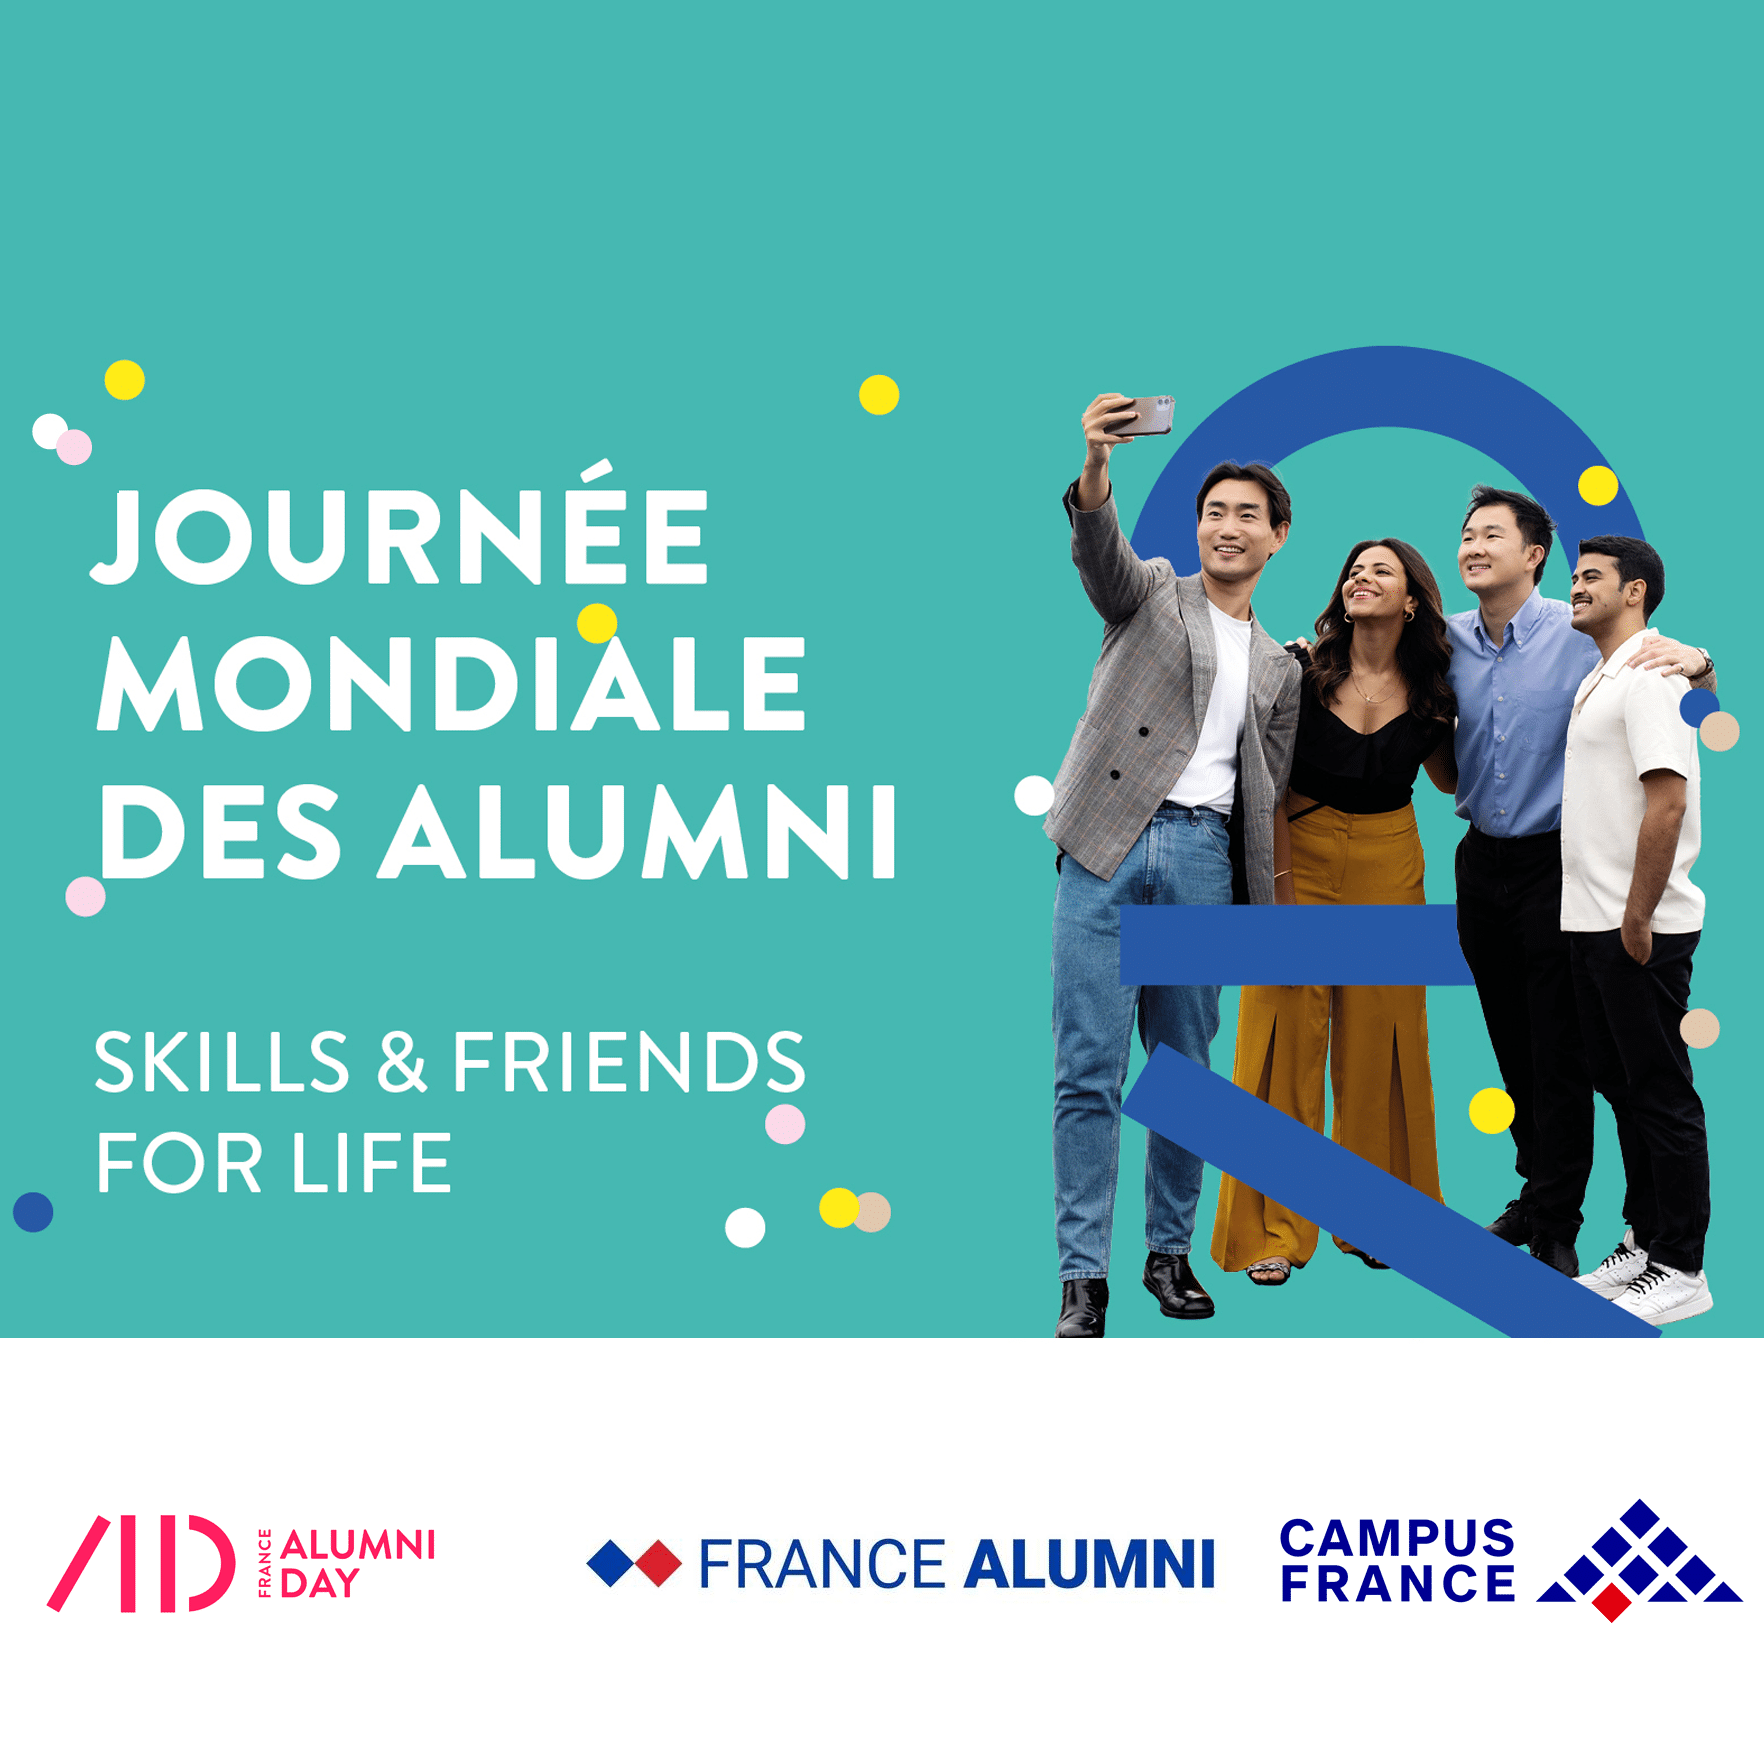 « France Alumni day », 1re journée mondiale des alumni de l’enseignement supérieur